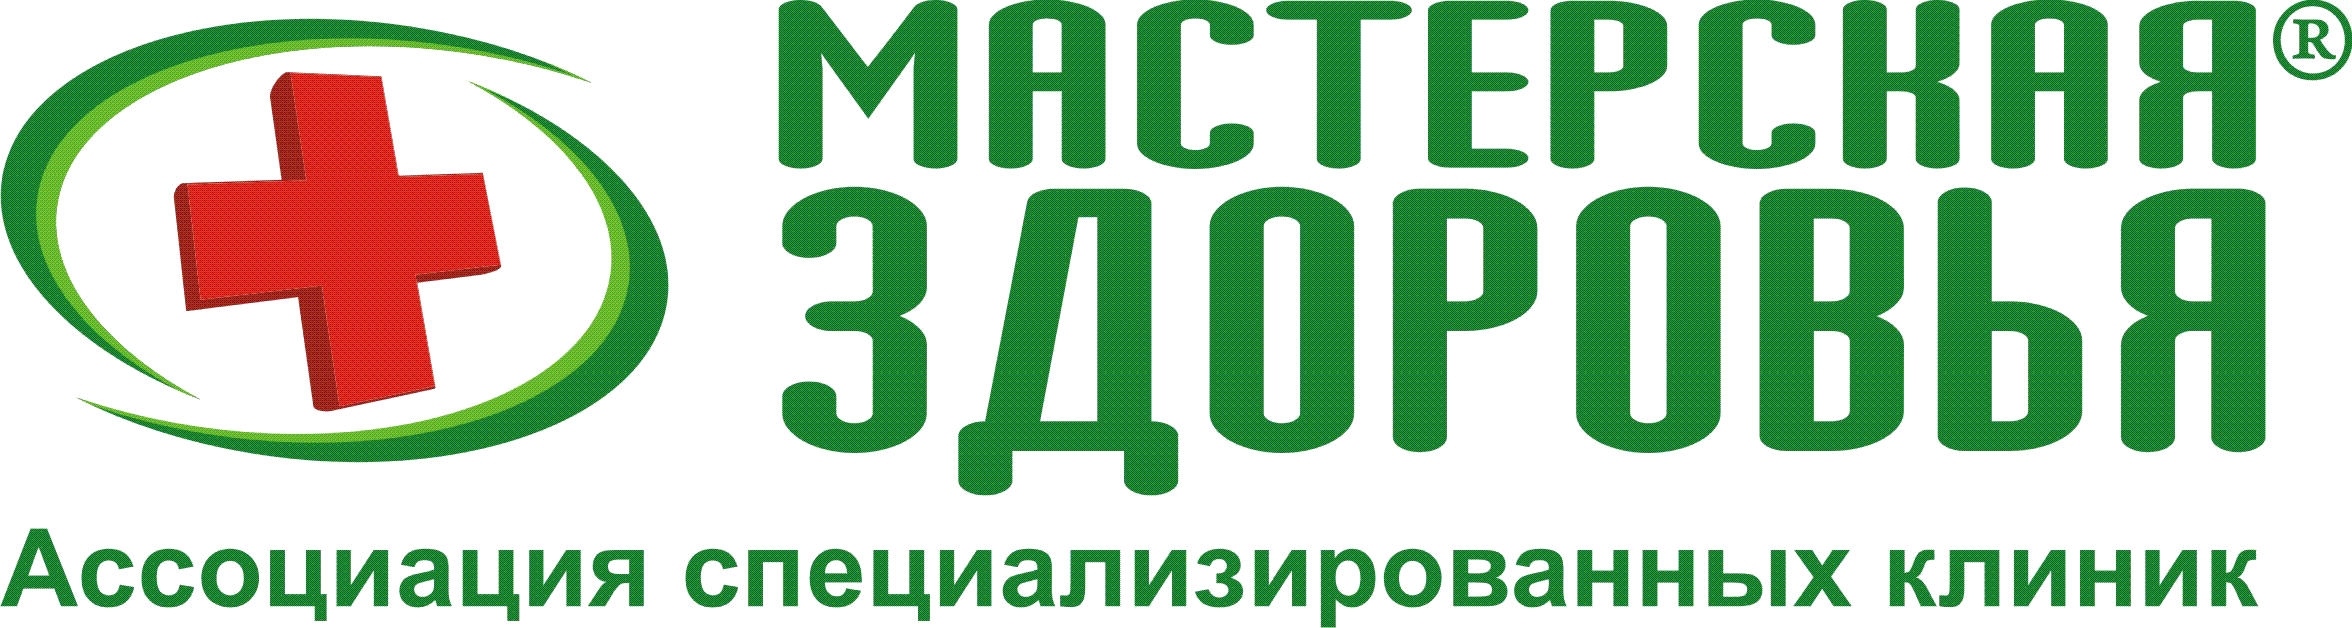 Мастерская здоровья логотип. Клиника мастерская здоровья. Клиника мастерская здоровья Санкт-Петербург логотип. Центр здоровья логотип.